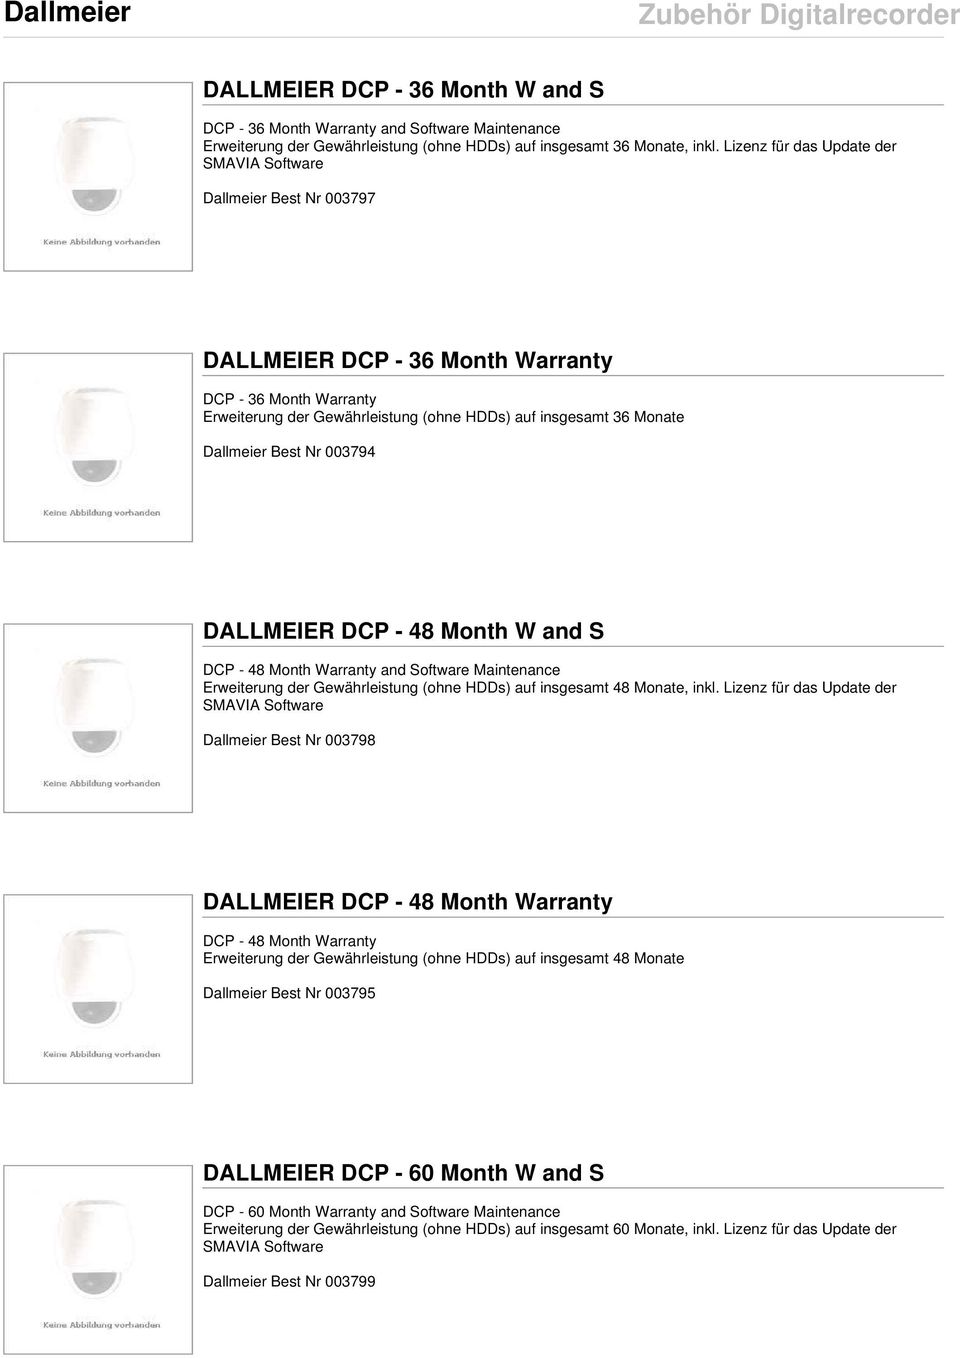 Dallmeier Best Nr 003794 DALLMEIER DCP - 48 Month W and S DCP - 48 Month Warranty and Software Maintenance Erweiterung der Gewährleistung (ohne HDDs) auf insgesamt 48 Monate, inkl.